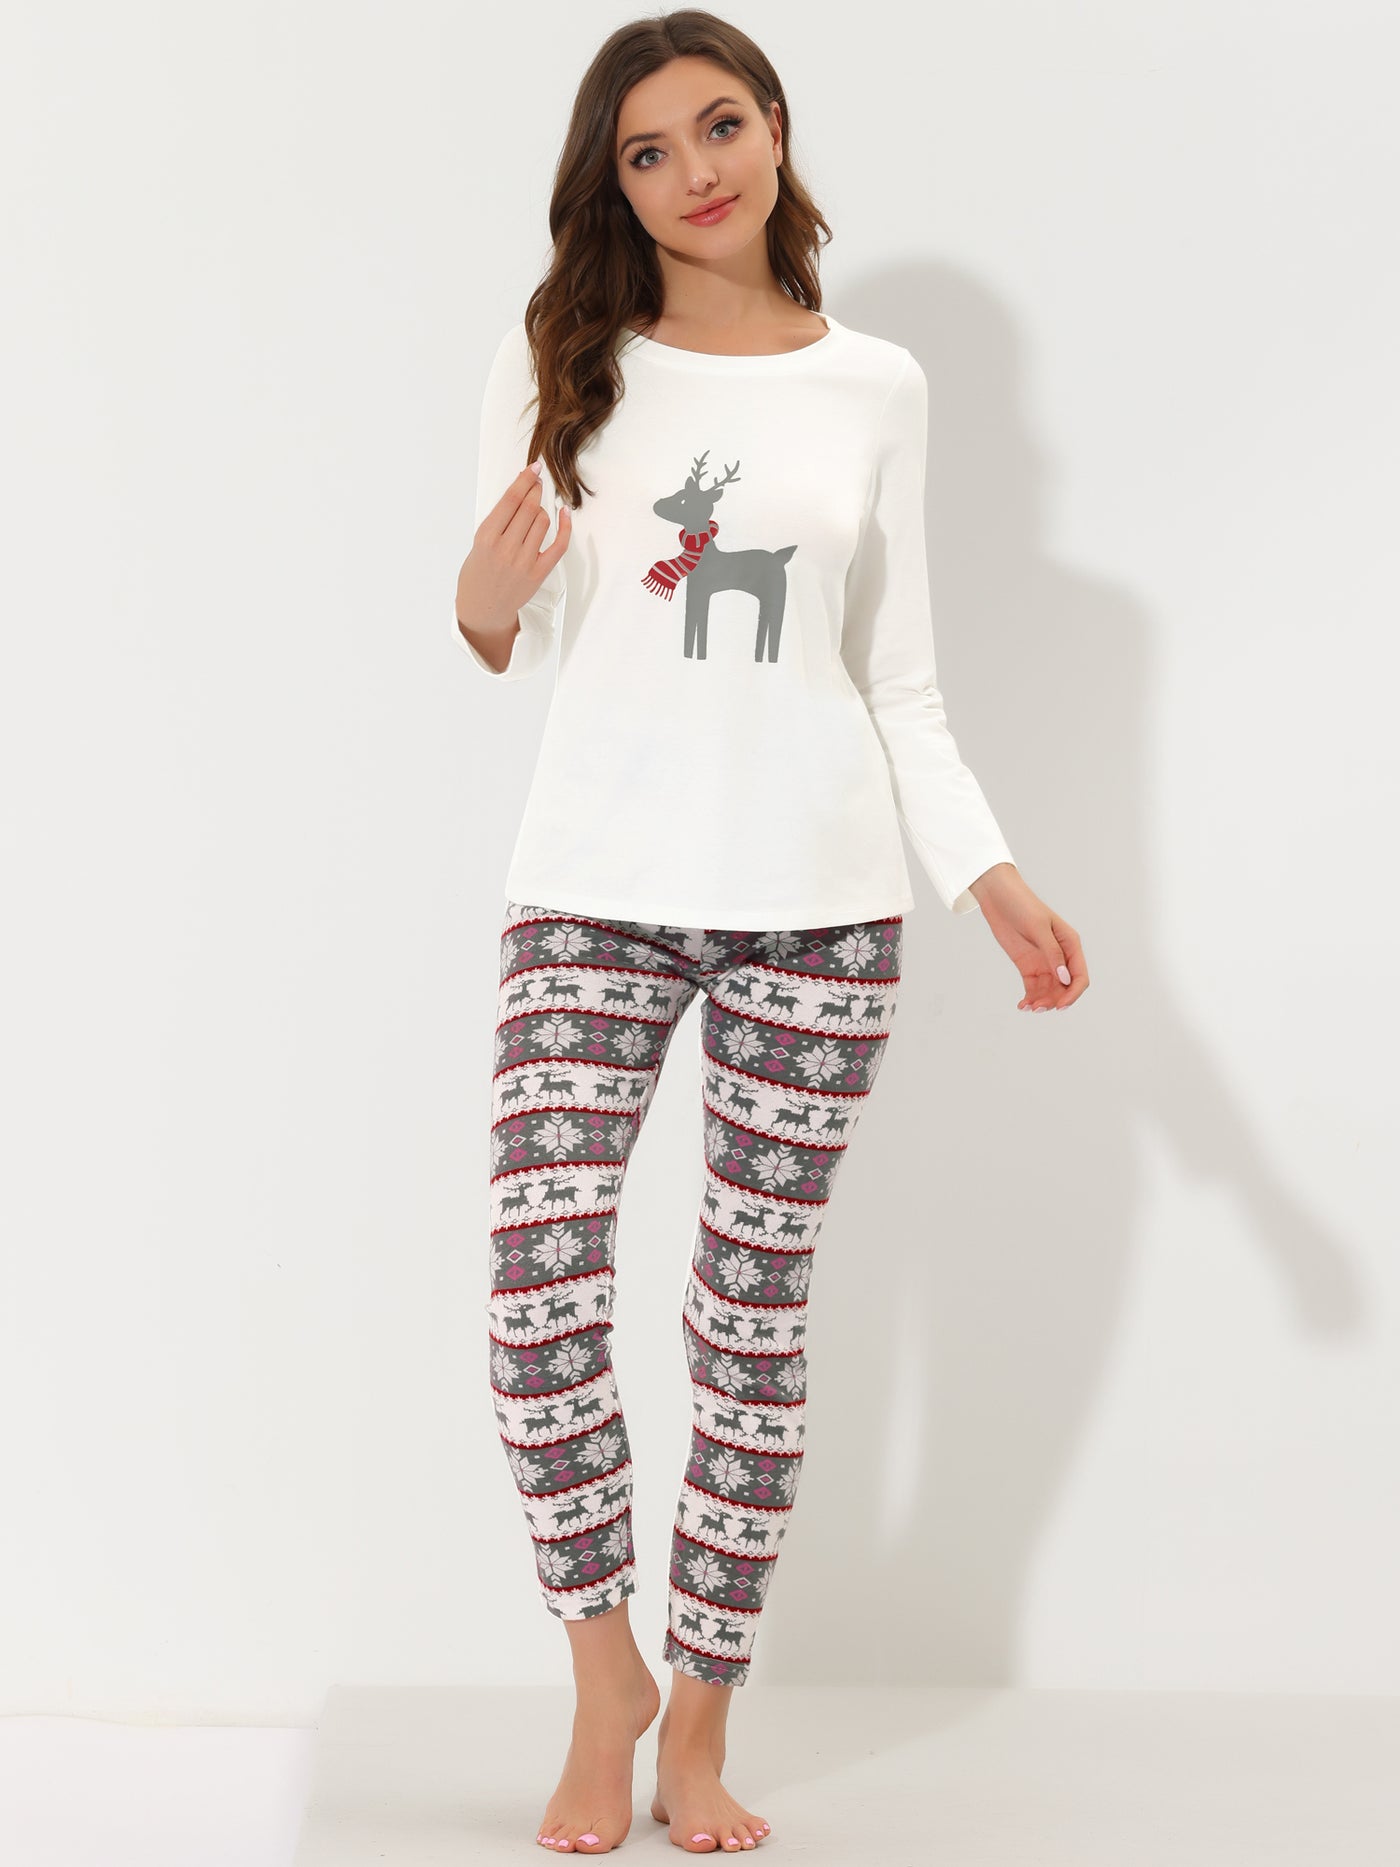 Bublédon Women's Sleepwear Soft Winter Elk Loungewear Pajama Sets